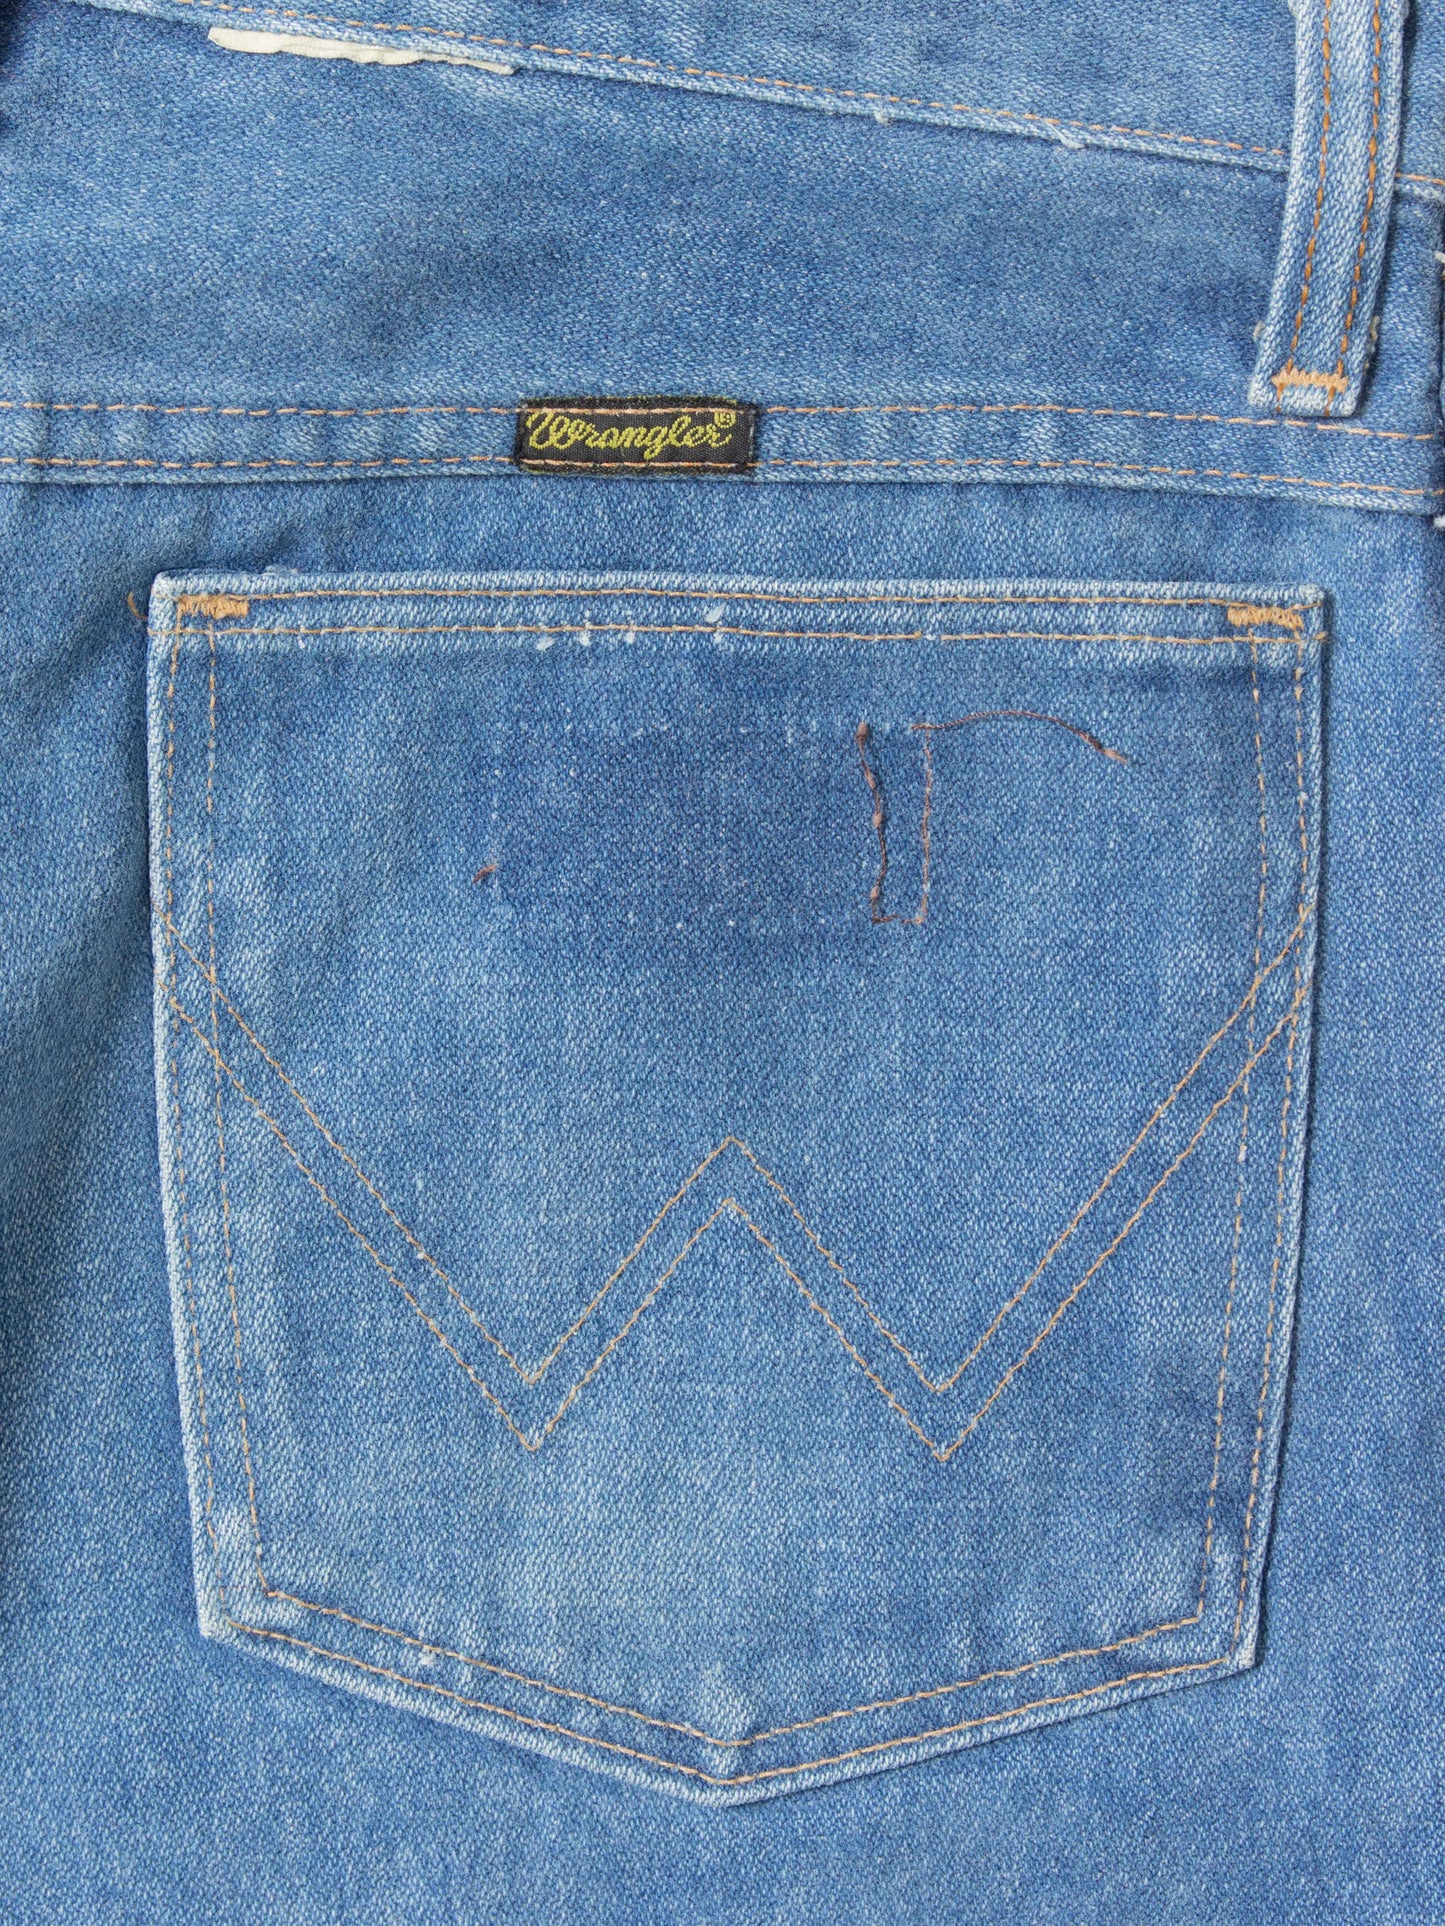 Vtg 1980s Wrangler Bootcut Denim Trousers - Made in USA (30x30)